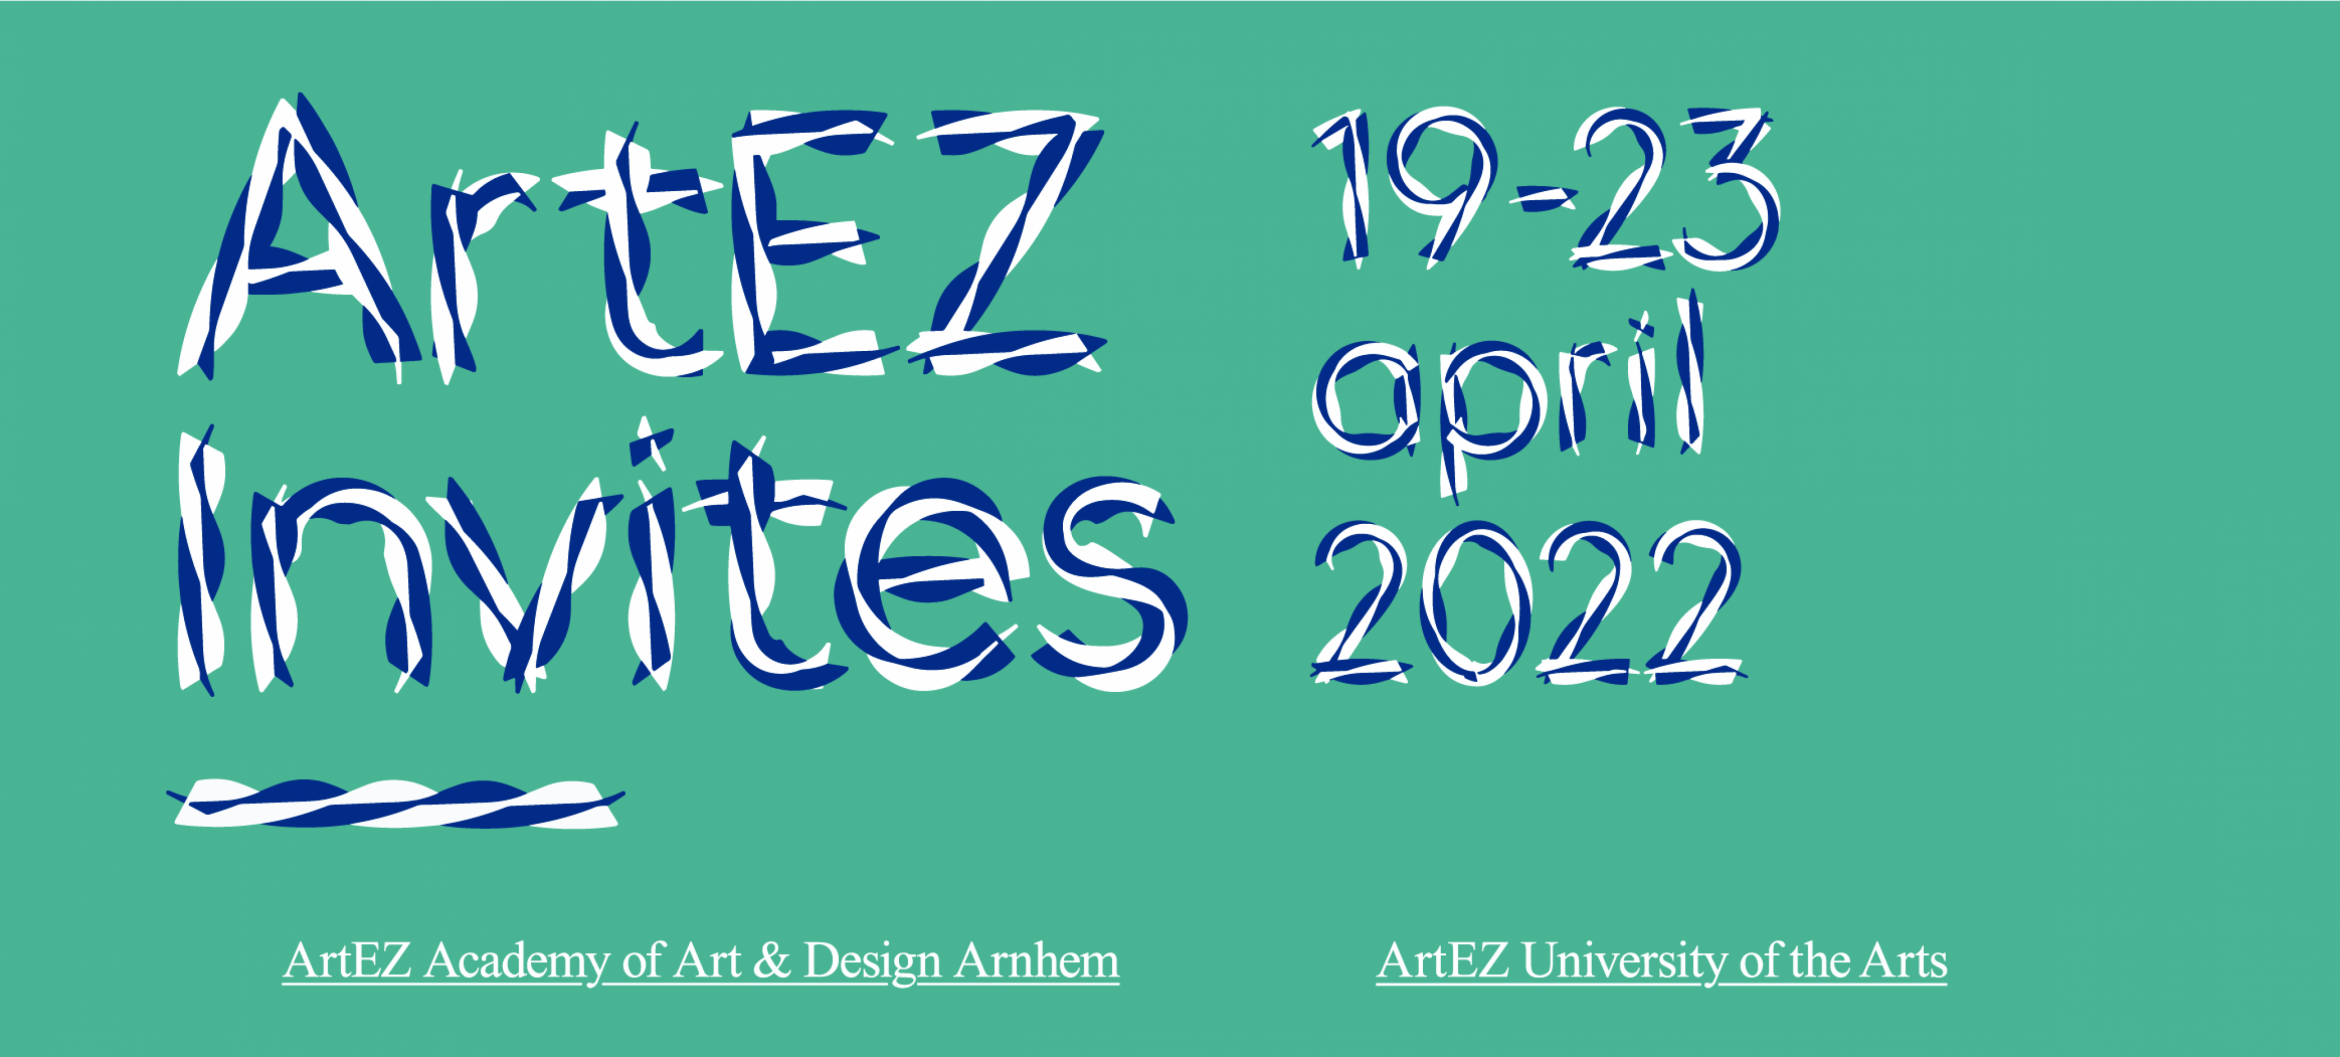 Geef een boost aan je eigen ontwikkeling, maakpraktijk en netwerk tijdens ArtEZ Invites!